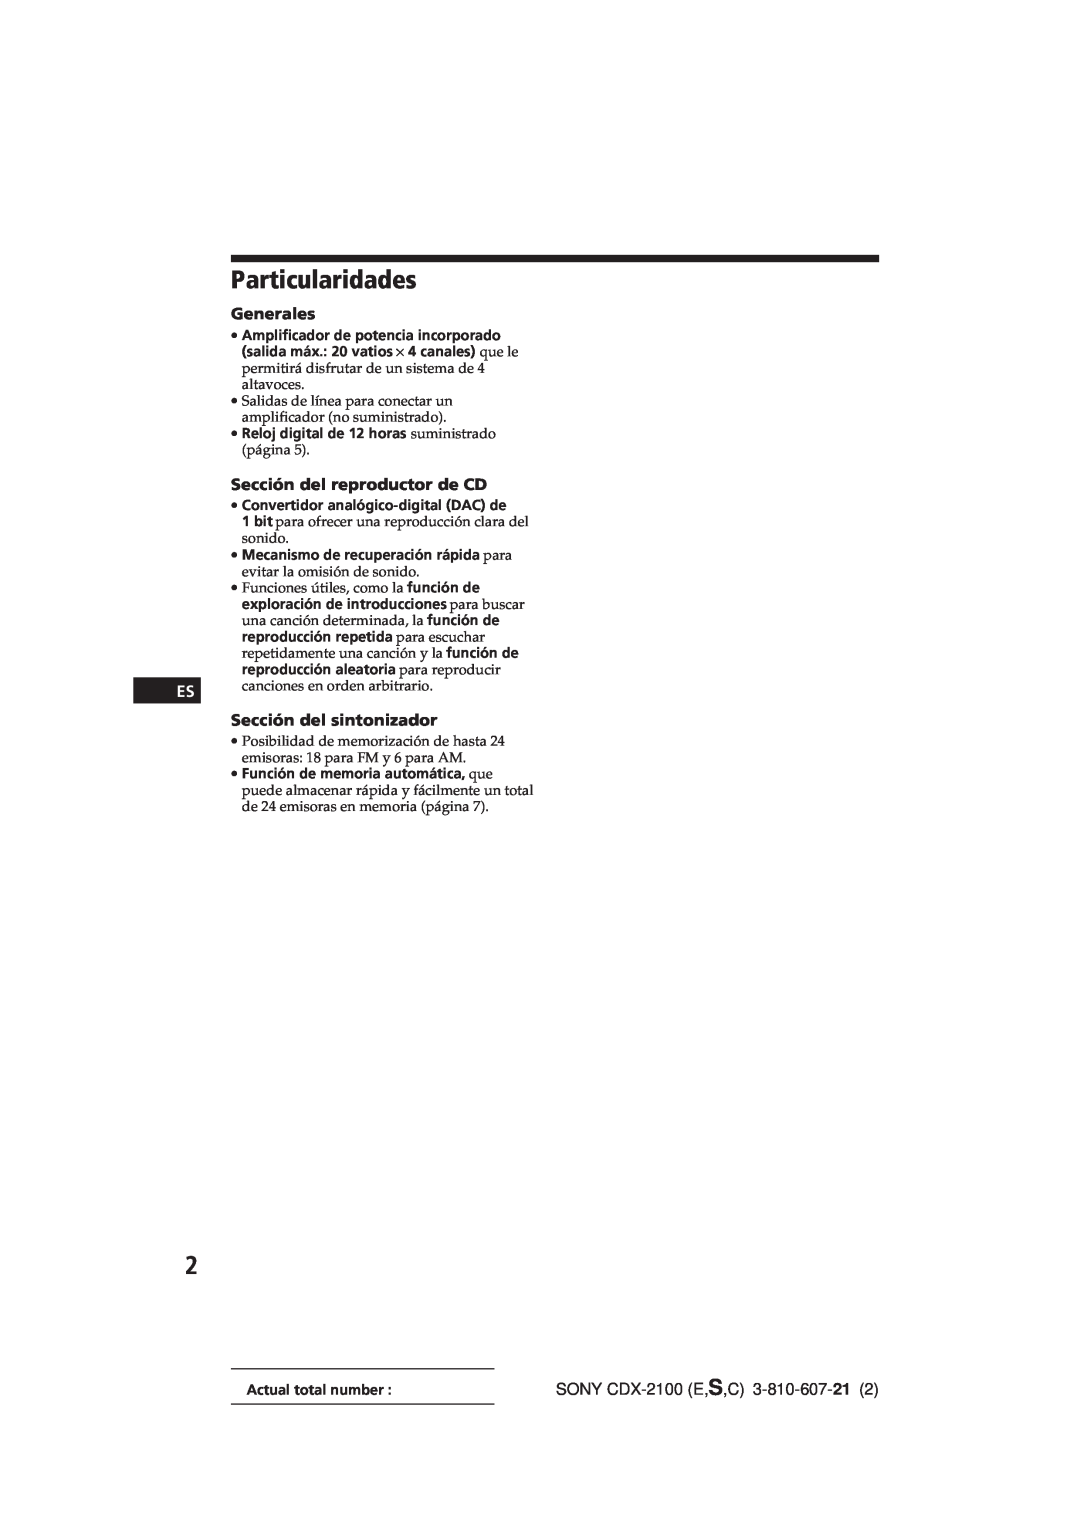 Sony manual Particularidades, Generales, Sección del reproductor de CD, Sección del sintonizador, SONY CDX-2100E,S,C 